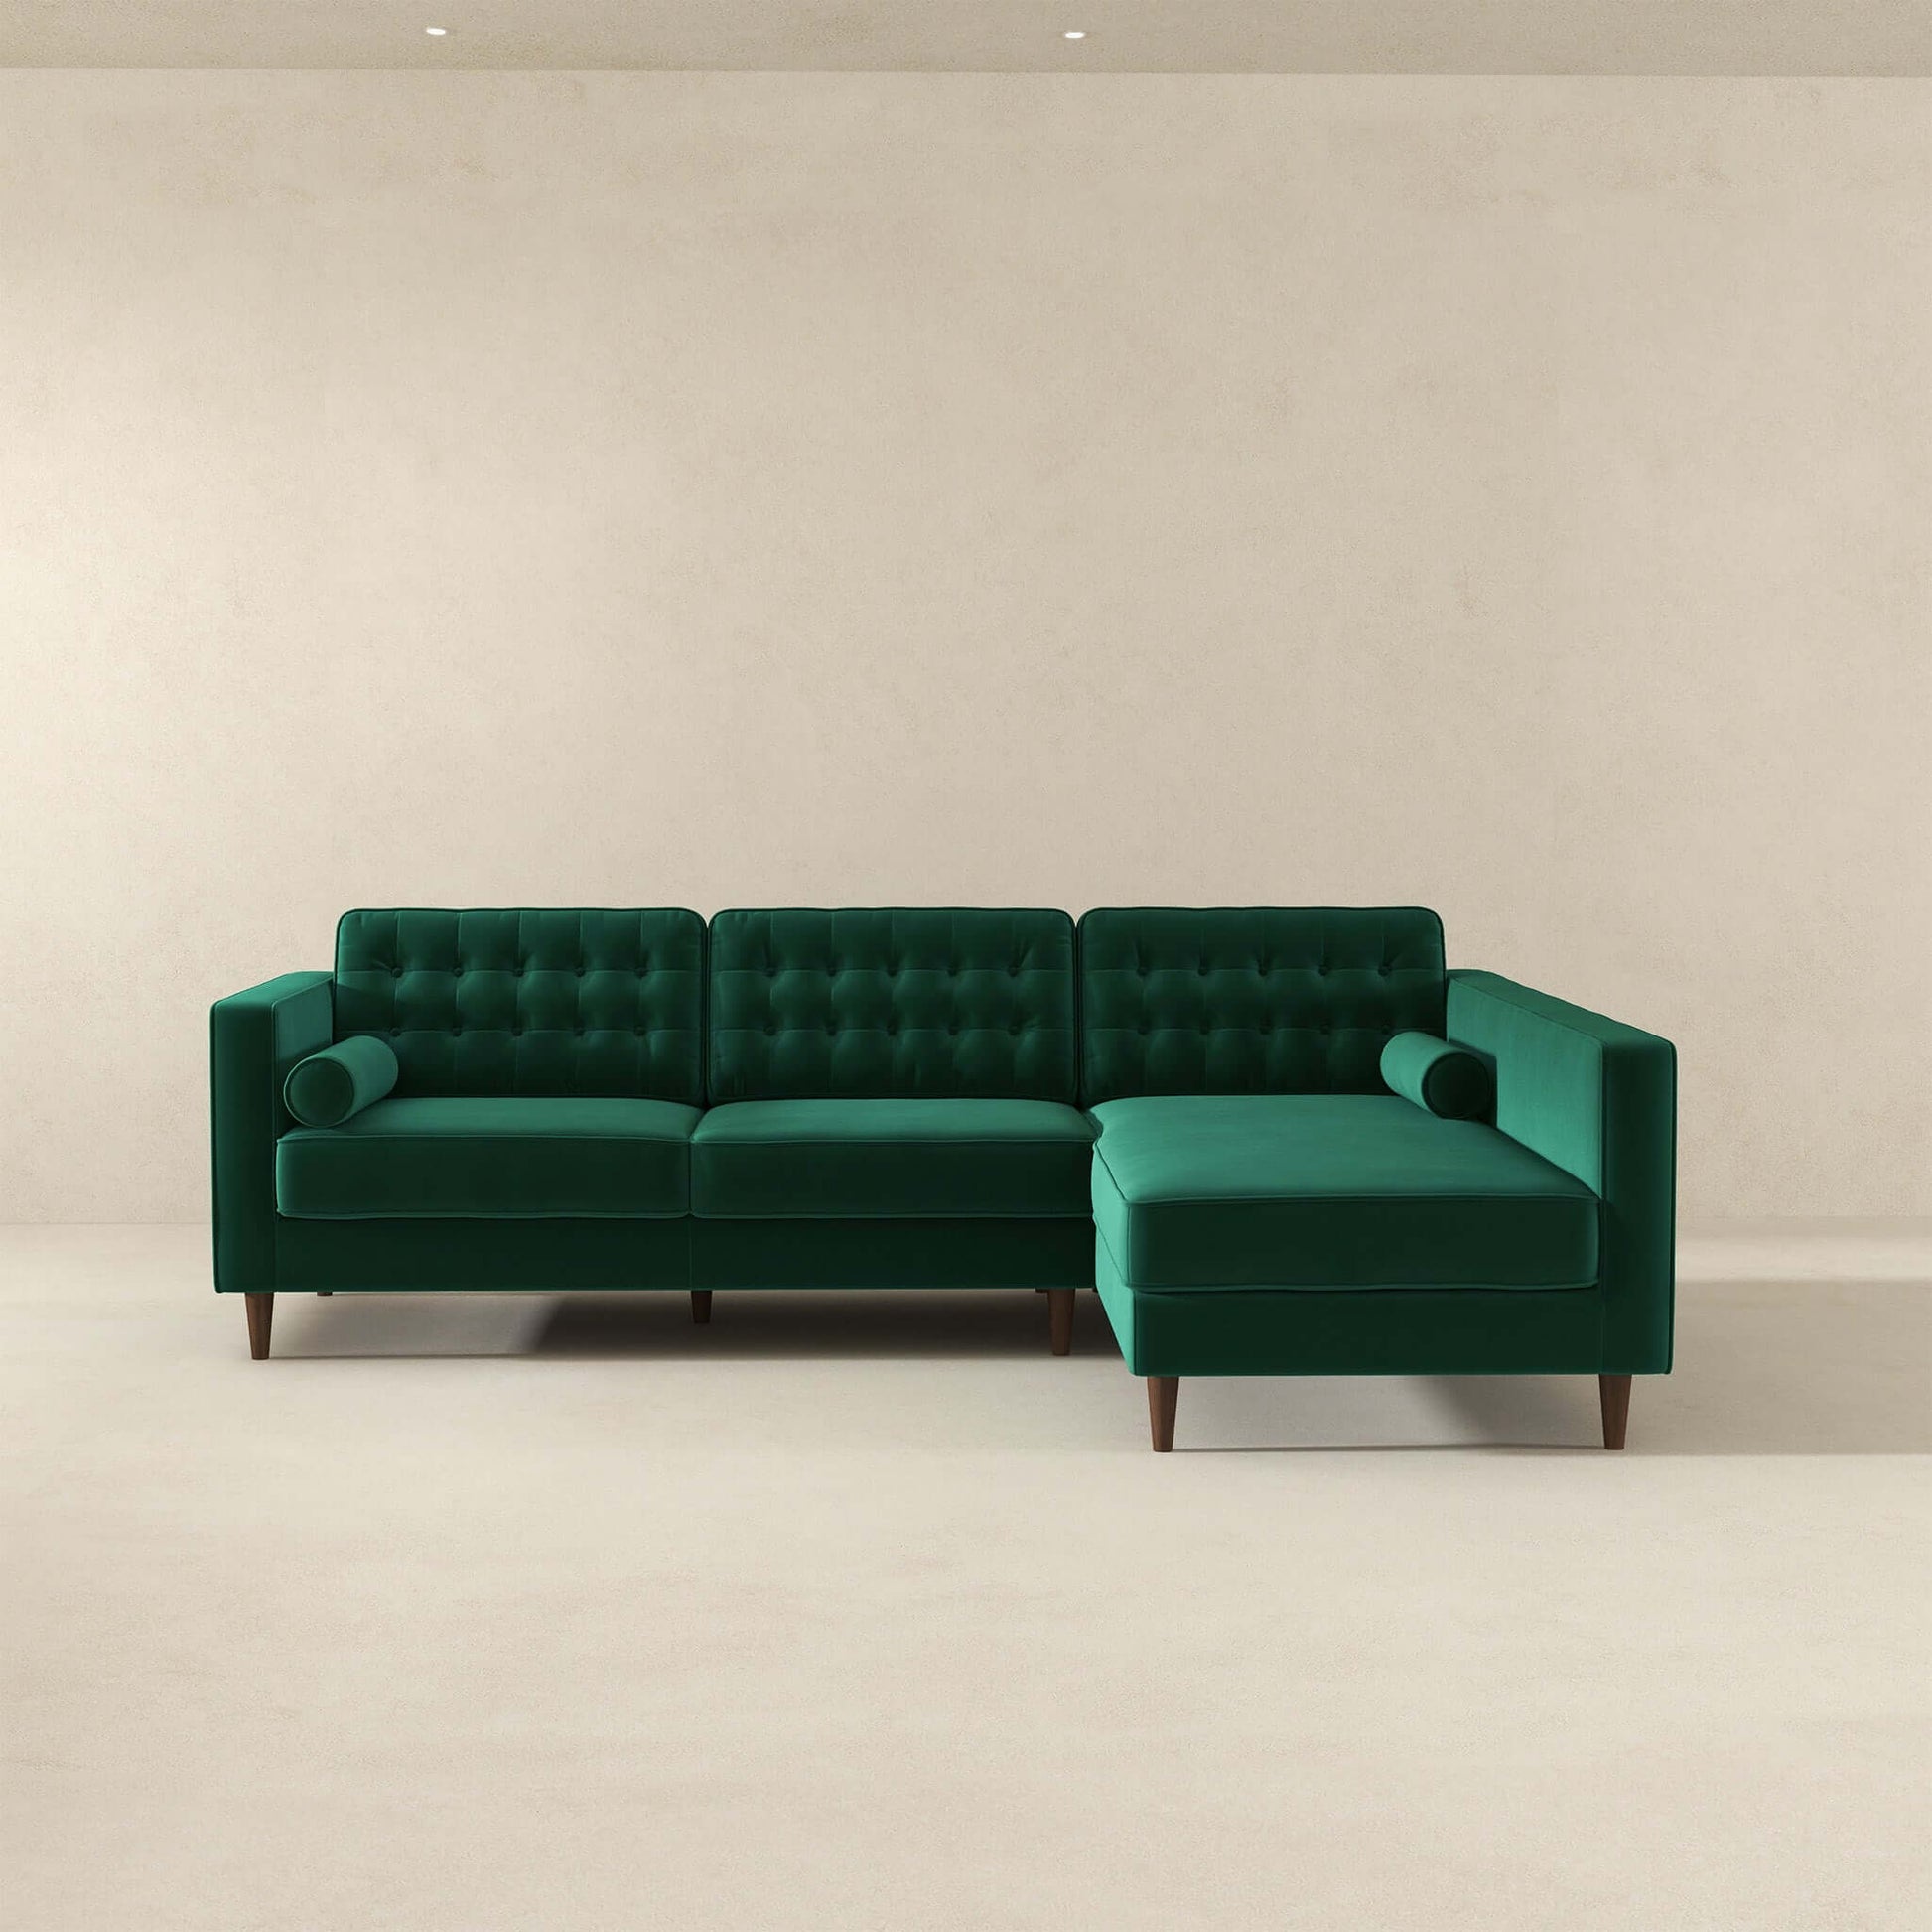 Christian Mid-Century Velvet Sectional Sofa in Green